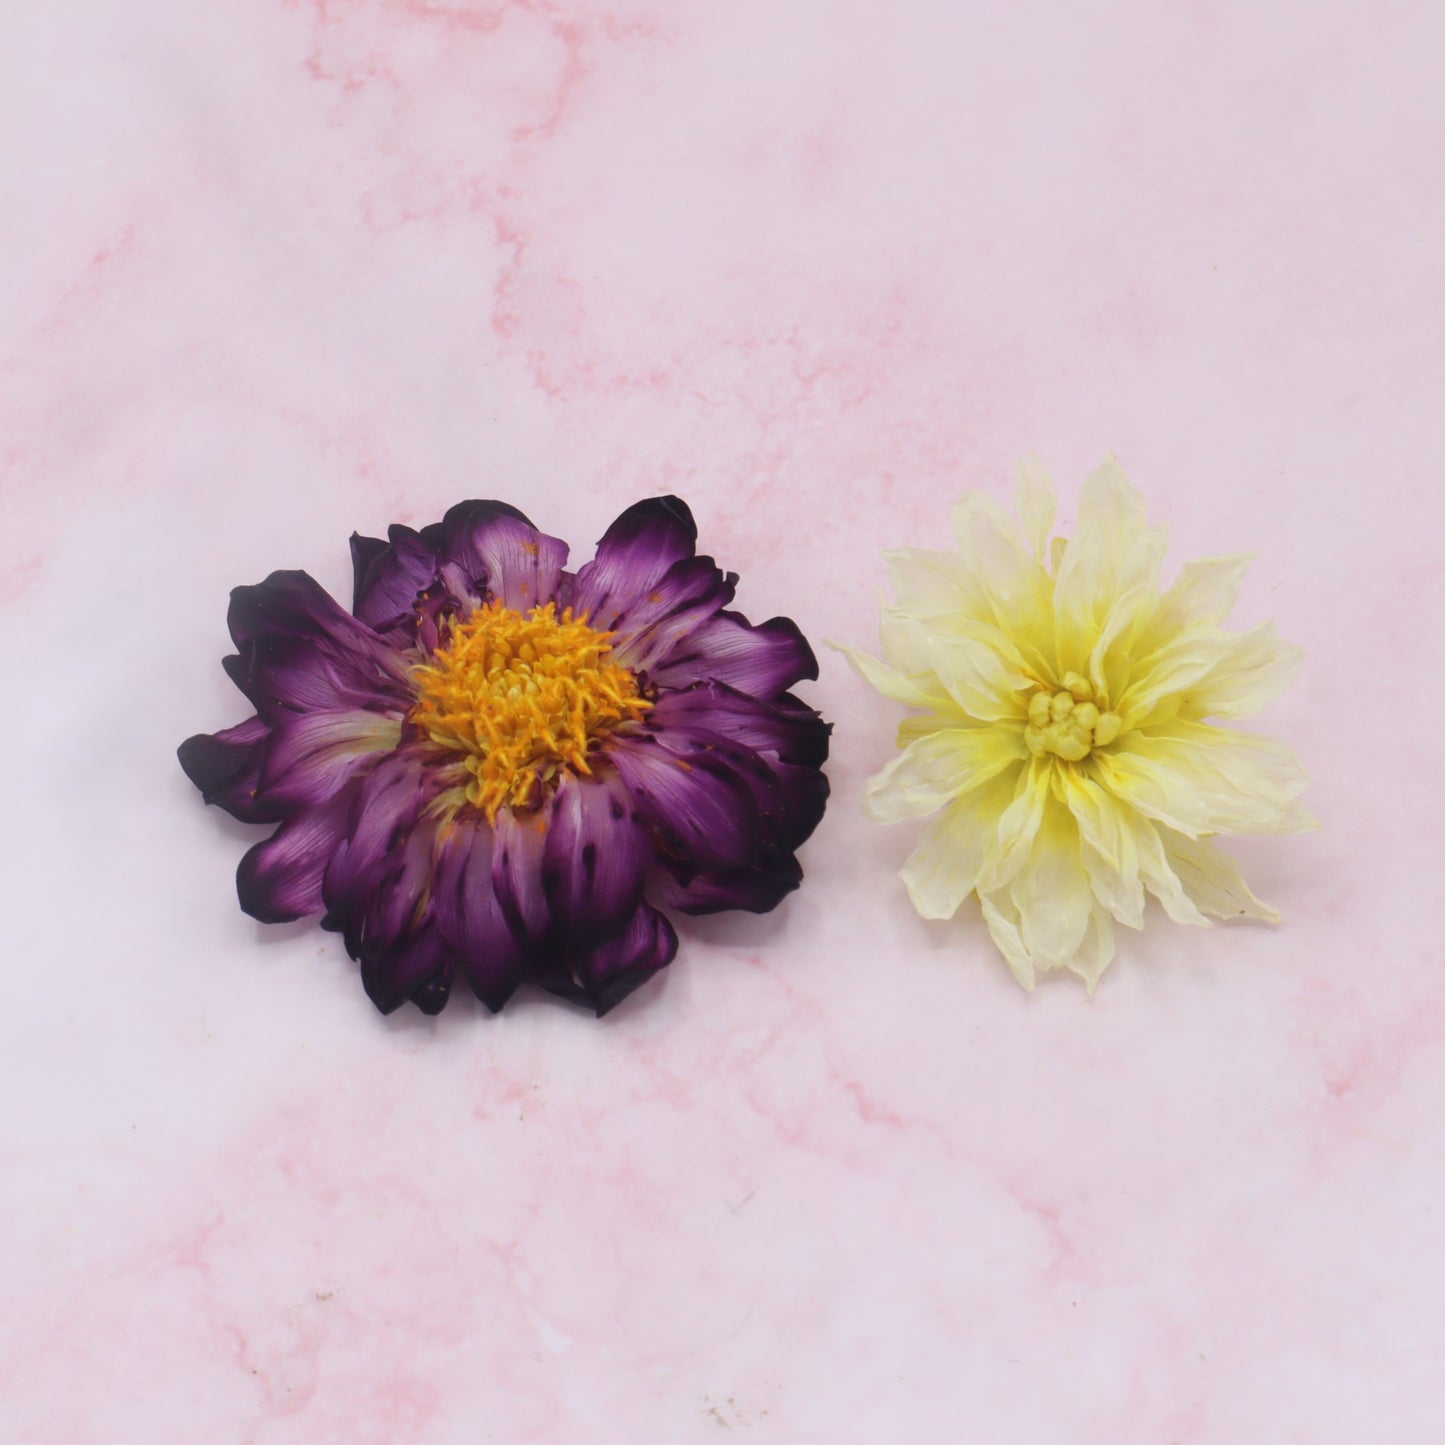 Gevriesdroogde Dahlia, eetbare bloemen. Floral Delight online webshop 